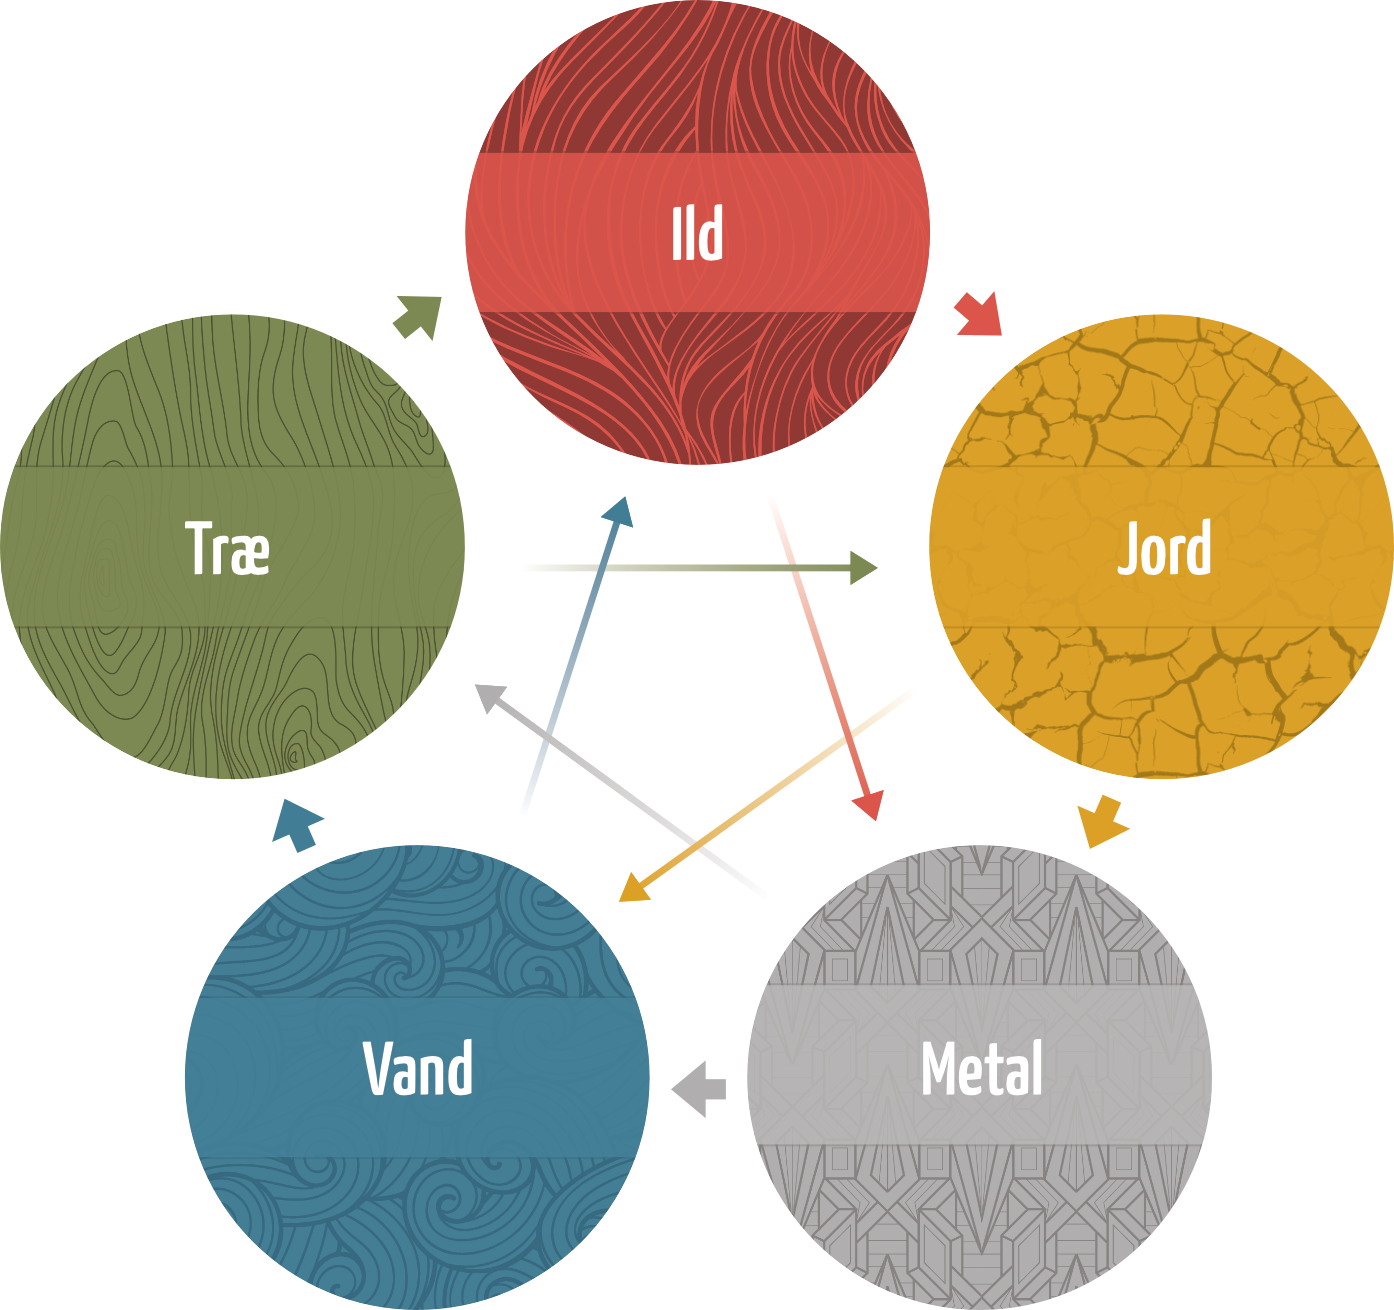 Model af de 5 elementer, deres relation og påvirkning af hinanden